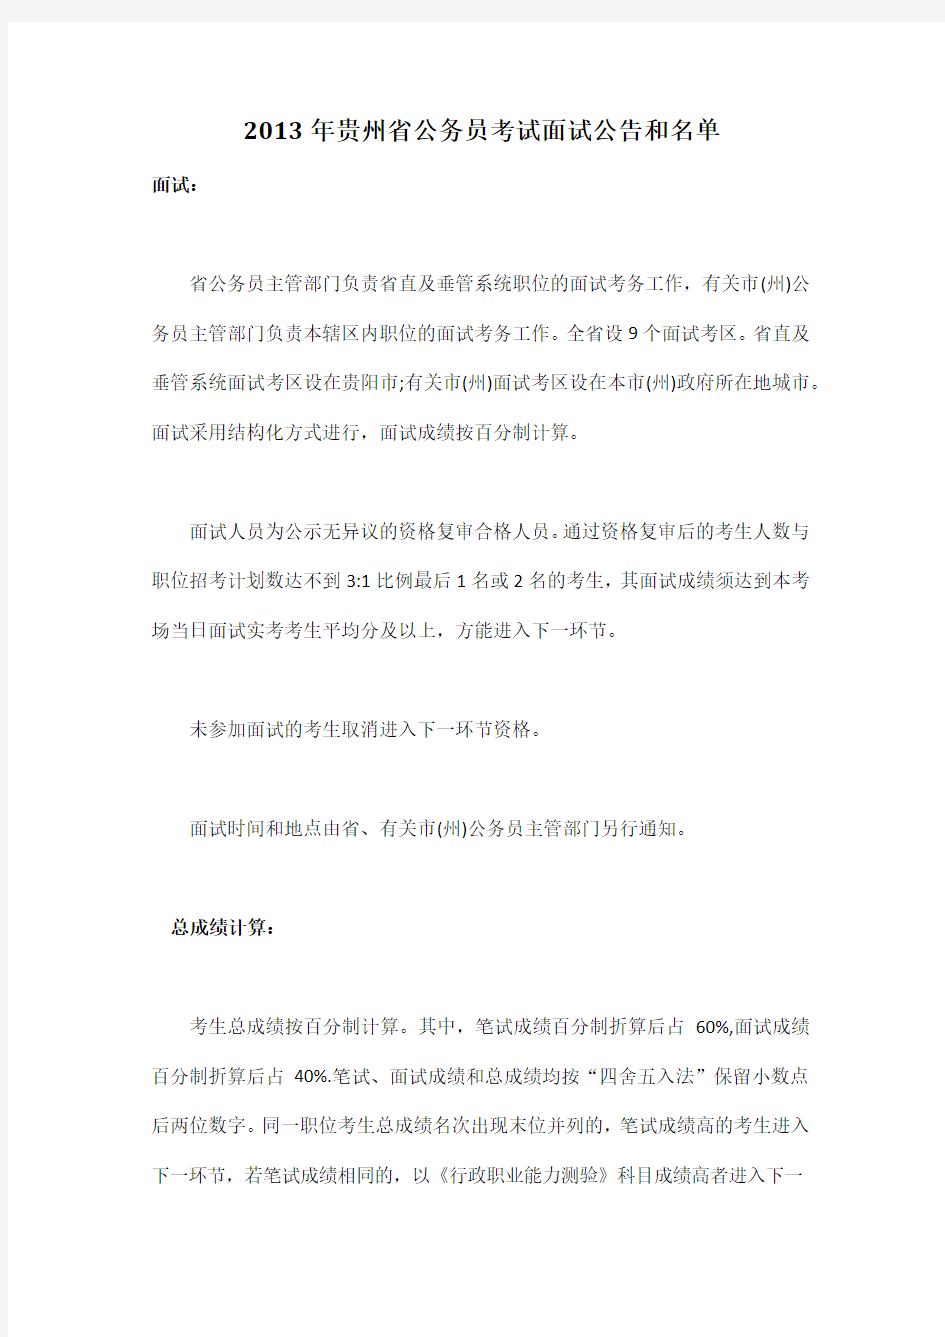 2013年贵州省公务员考试面试公告和名单